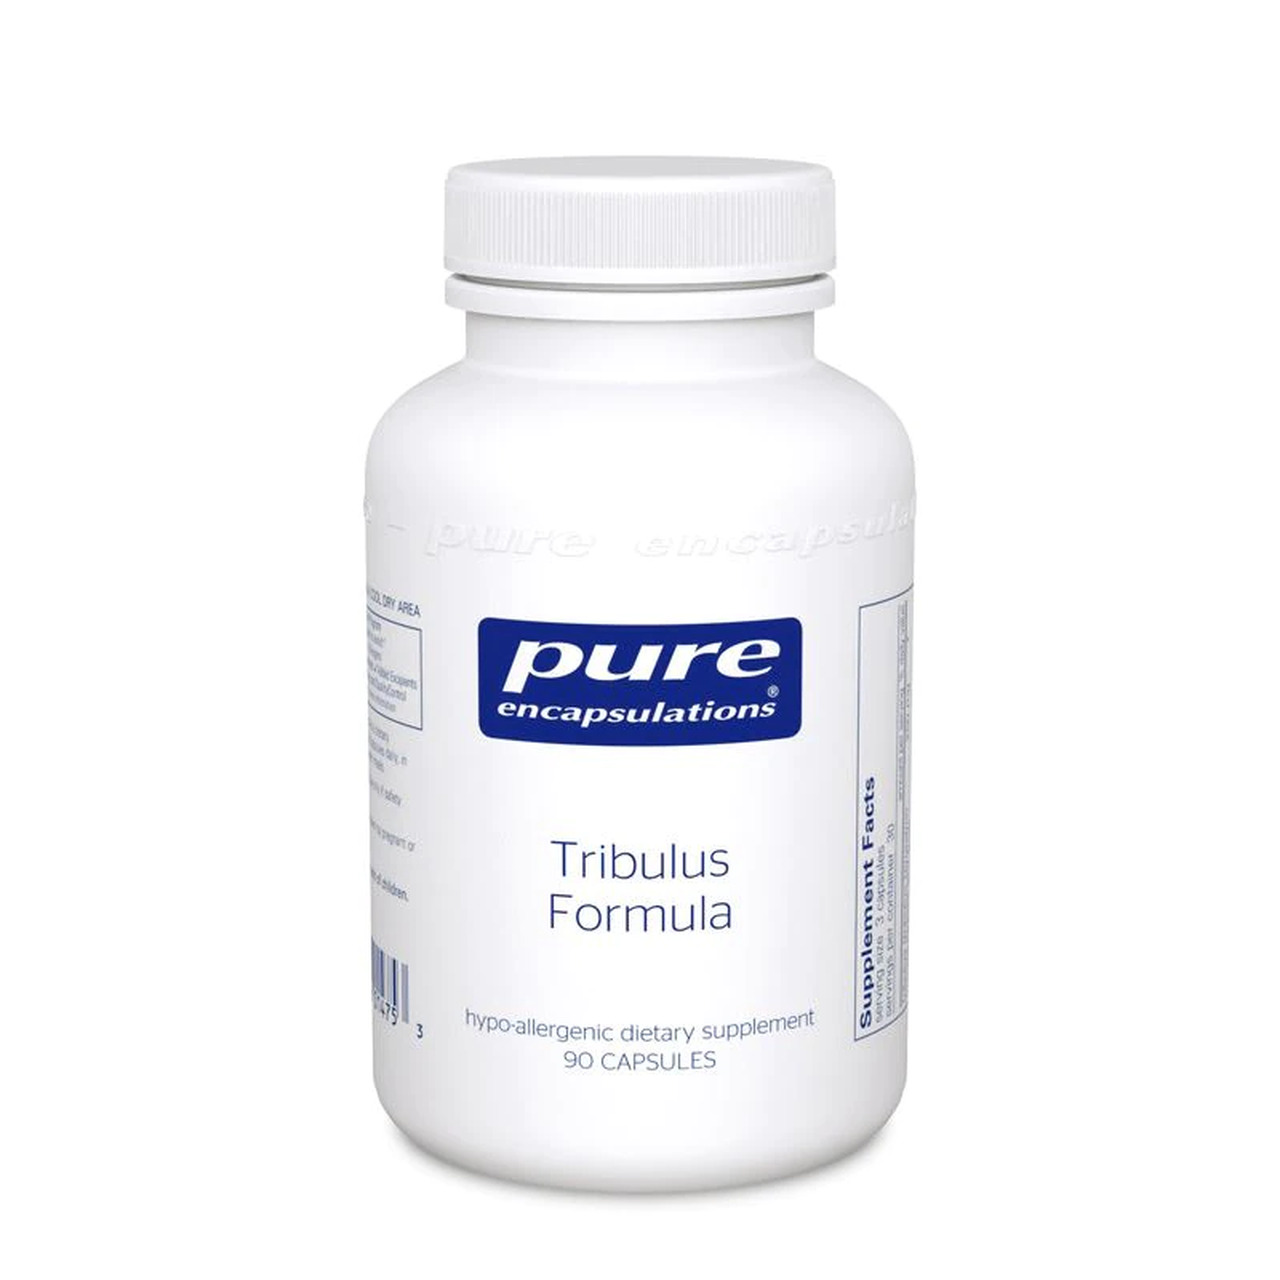 TribulusFormula